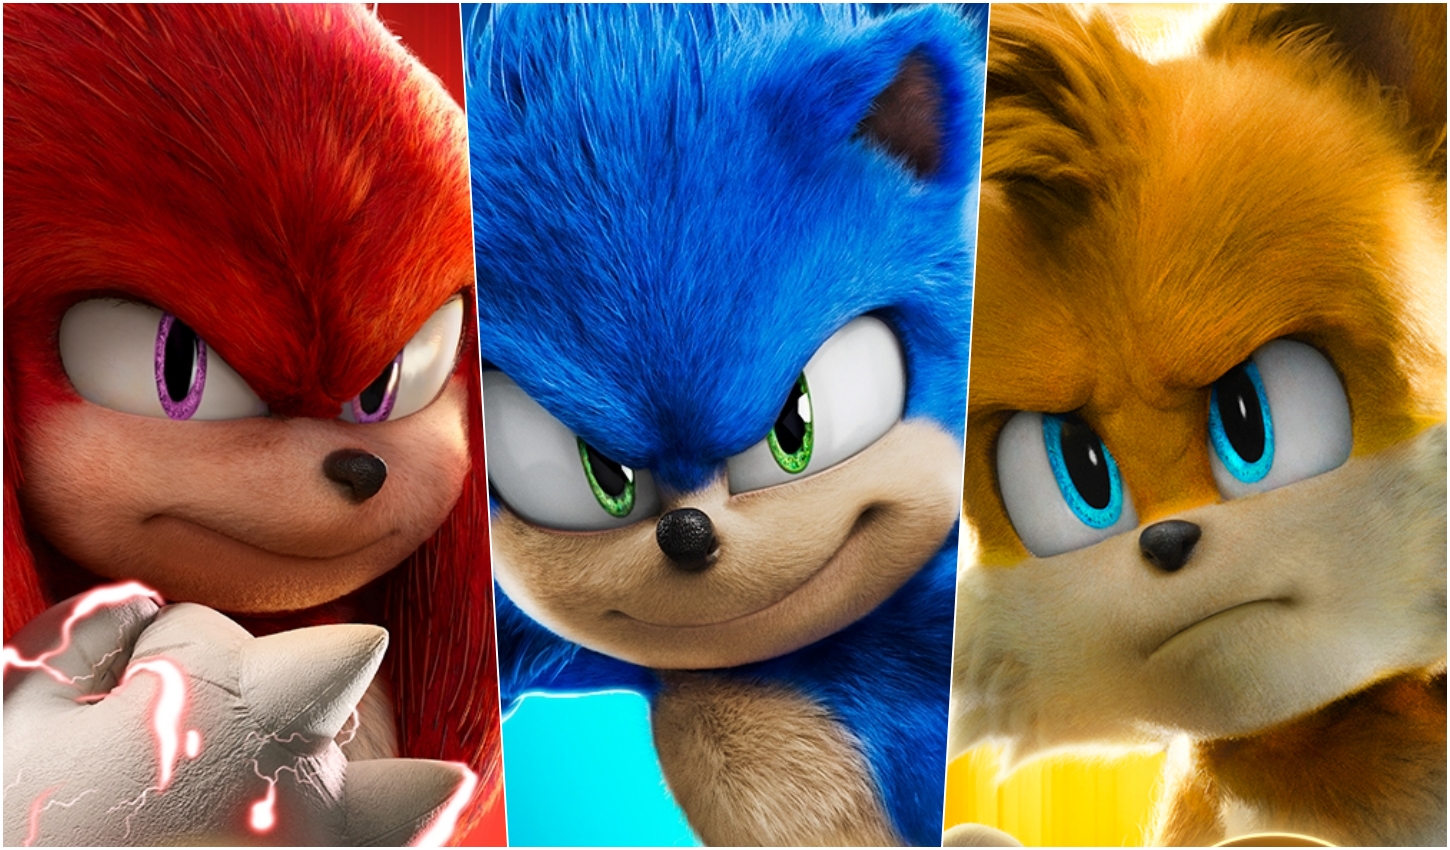 Tails, Knuckles e Robotnik surgem em BELO cartaz de 'Sonic 2: O